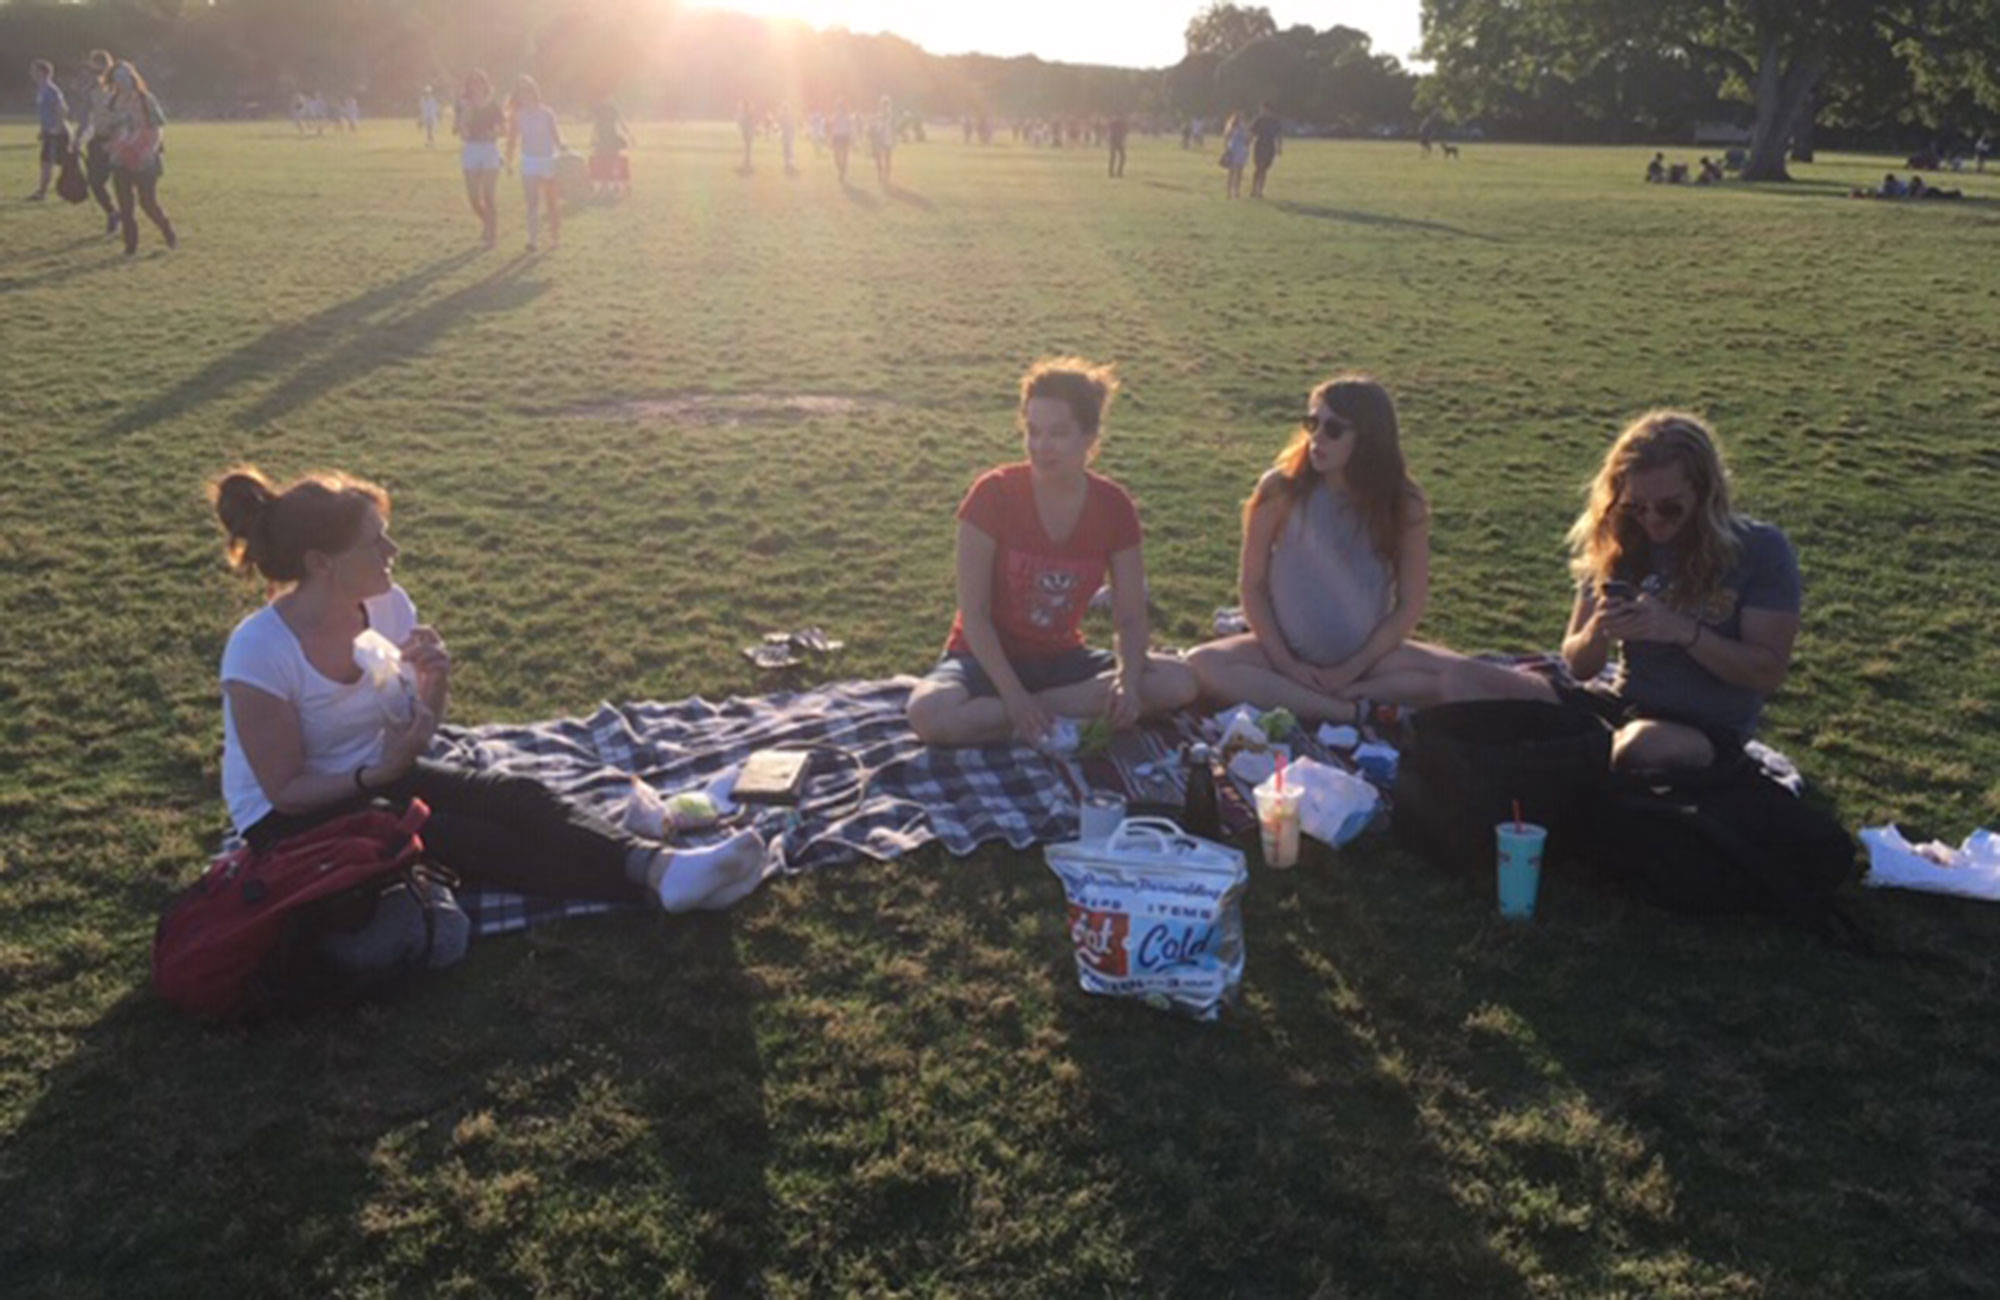 elin med vänner på picknick i en park